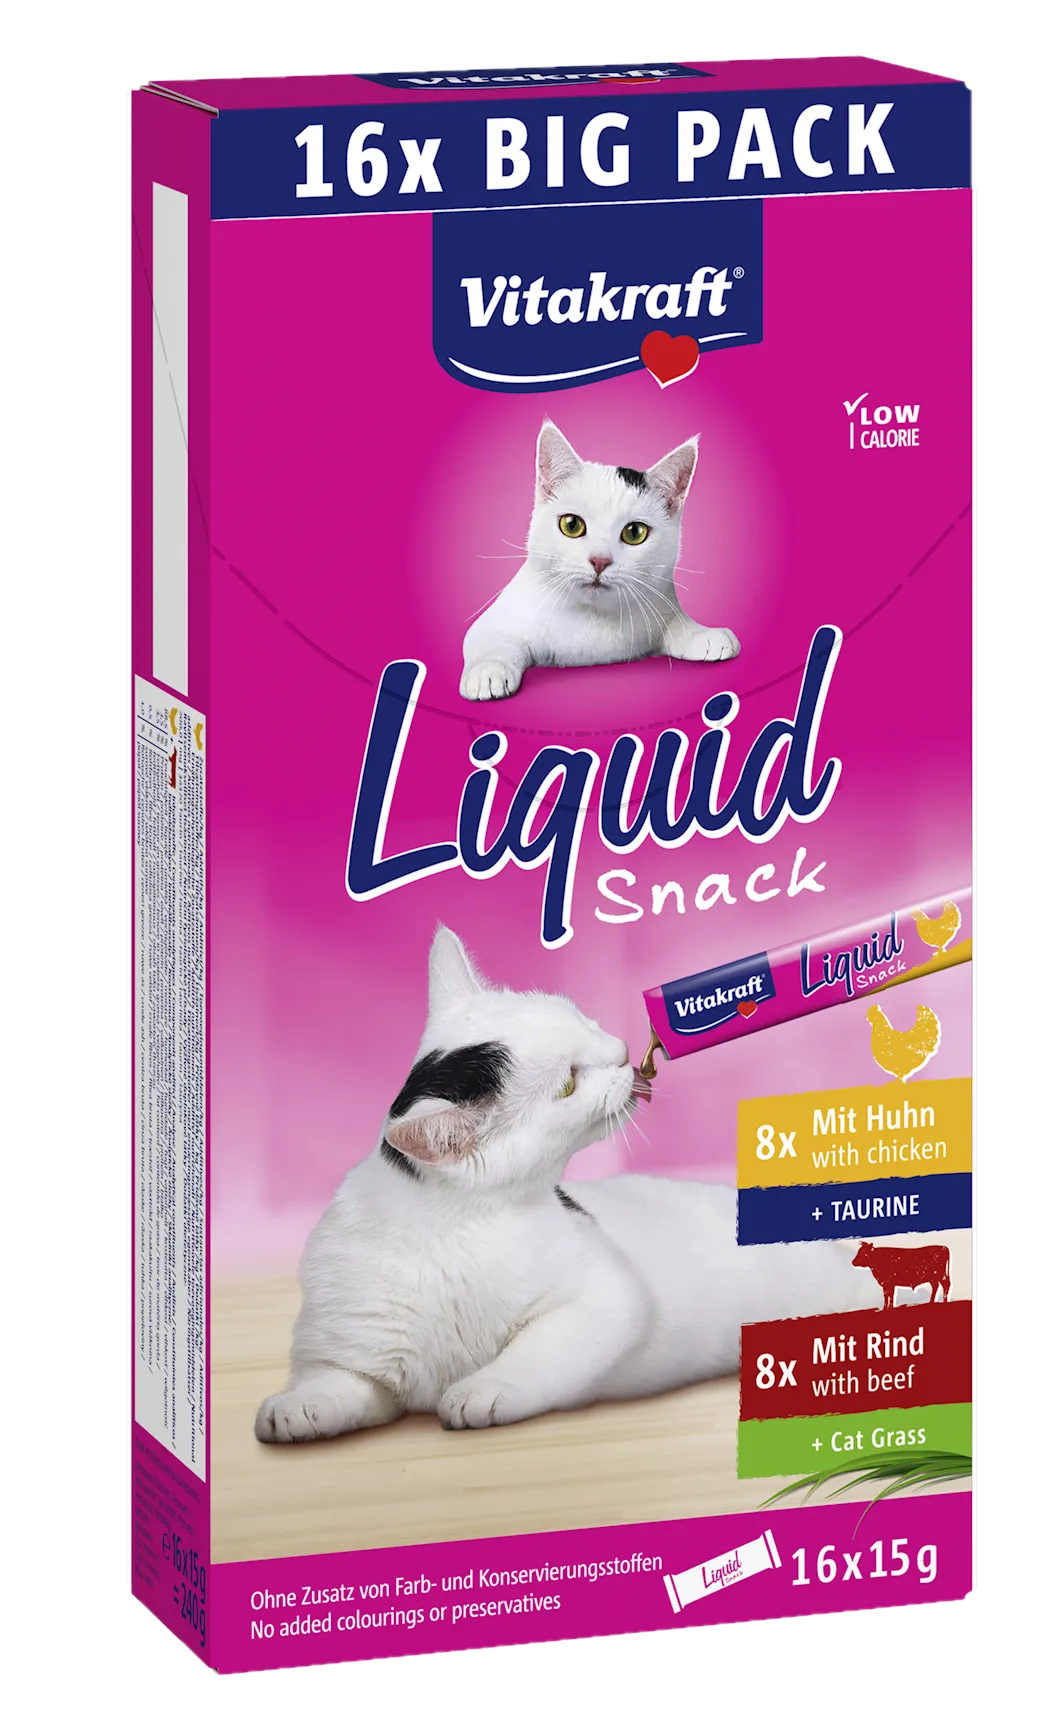 Vitakraft Liquid Snack Multipack 16x15 g